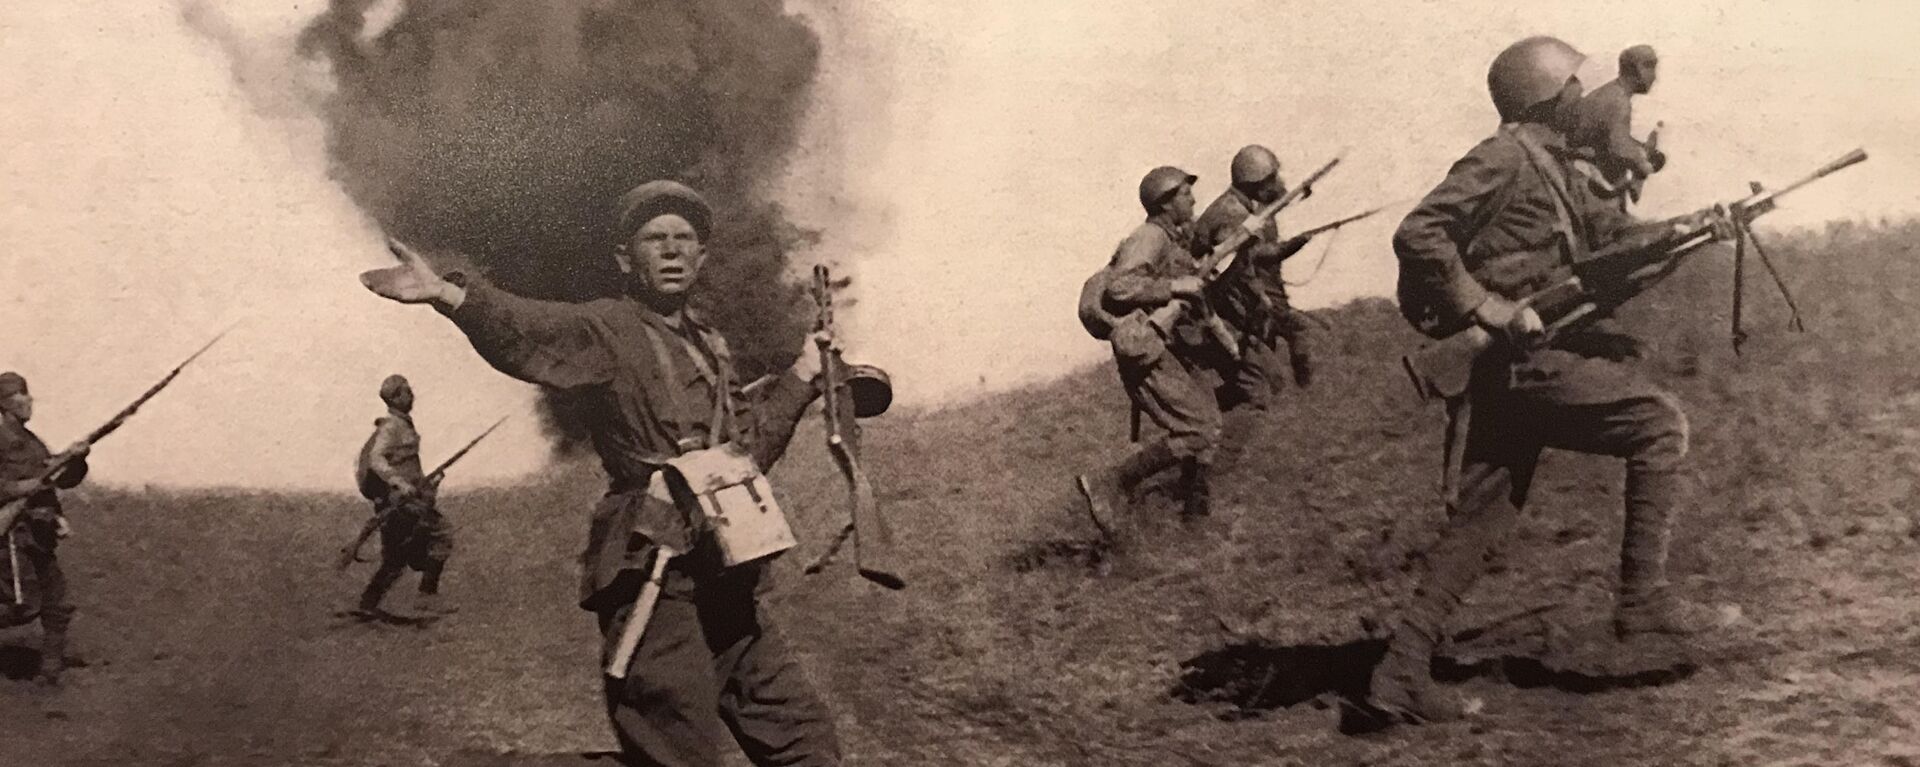 Borbena dejstva Crvene armije na prilazima Staljingradu  - Sputnik Srbija, 1920, 28.01.2020